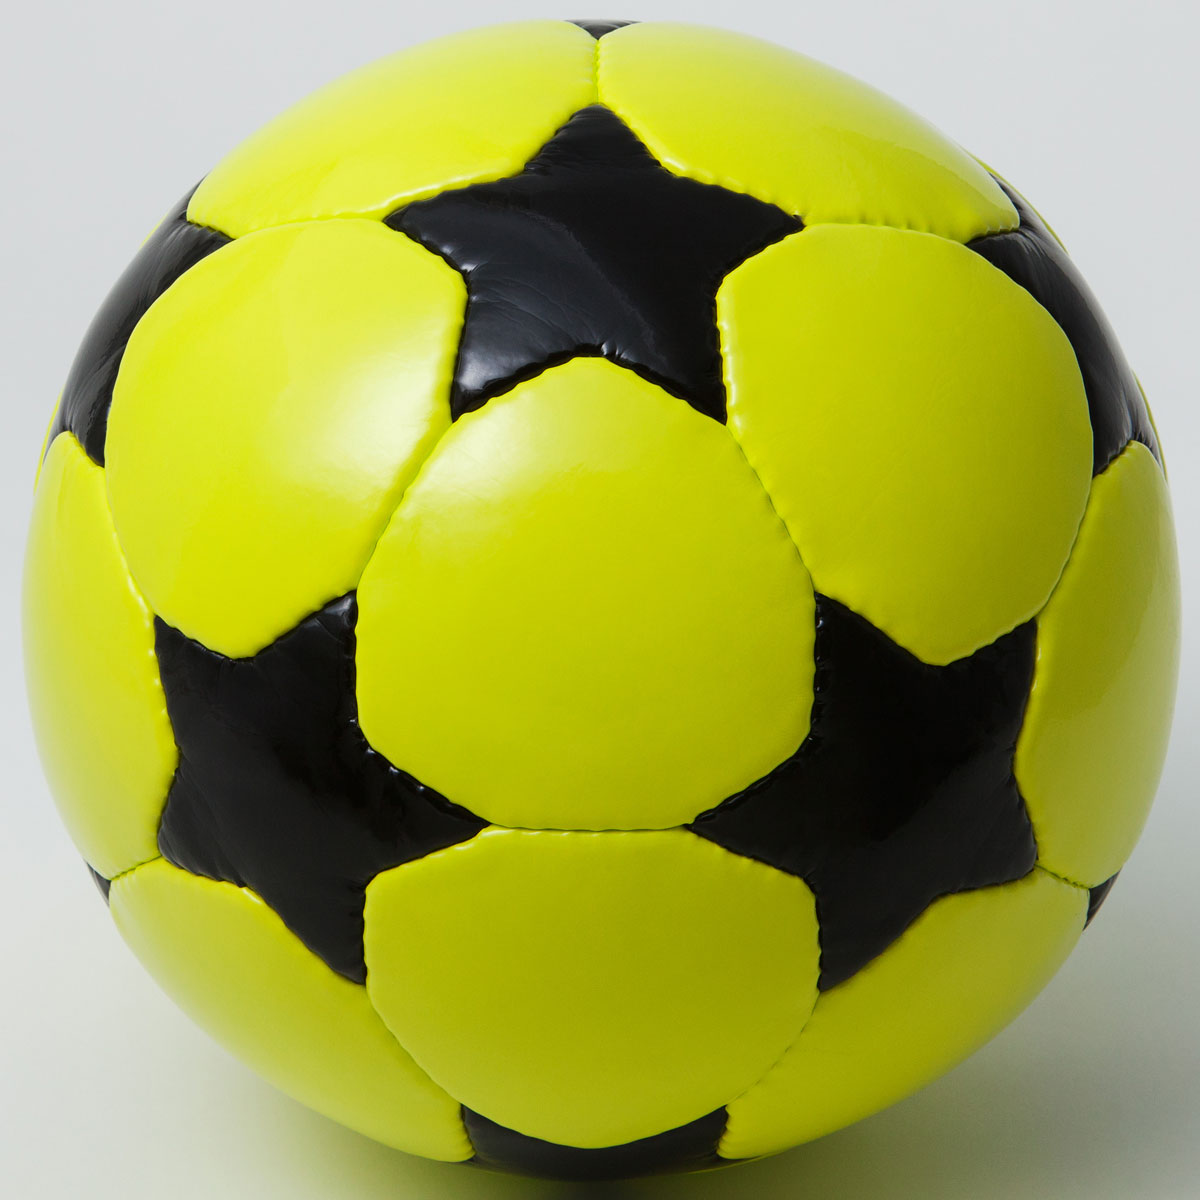 フットサルボール STAR BALL サッカーボール フットサルボール スターボール ブラック/ブラック 美しく暮らす